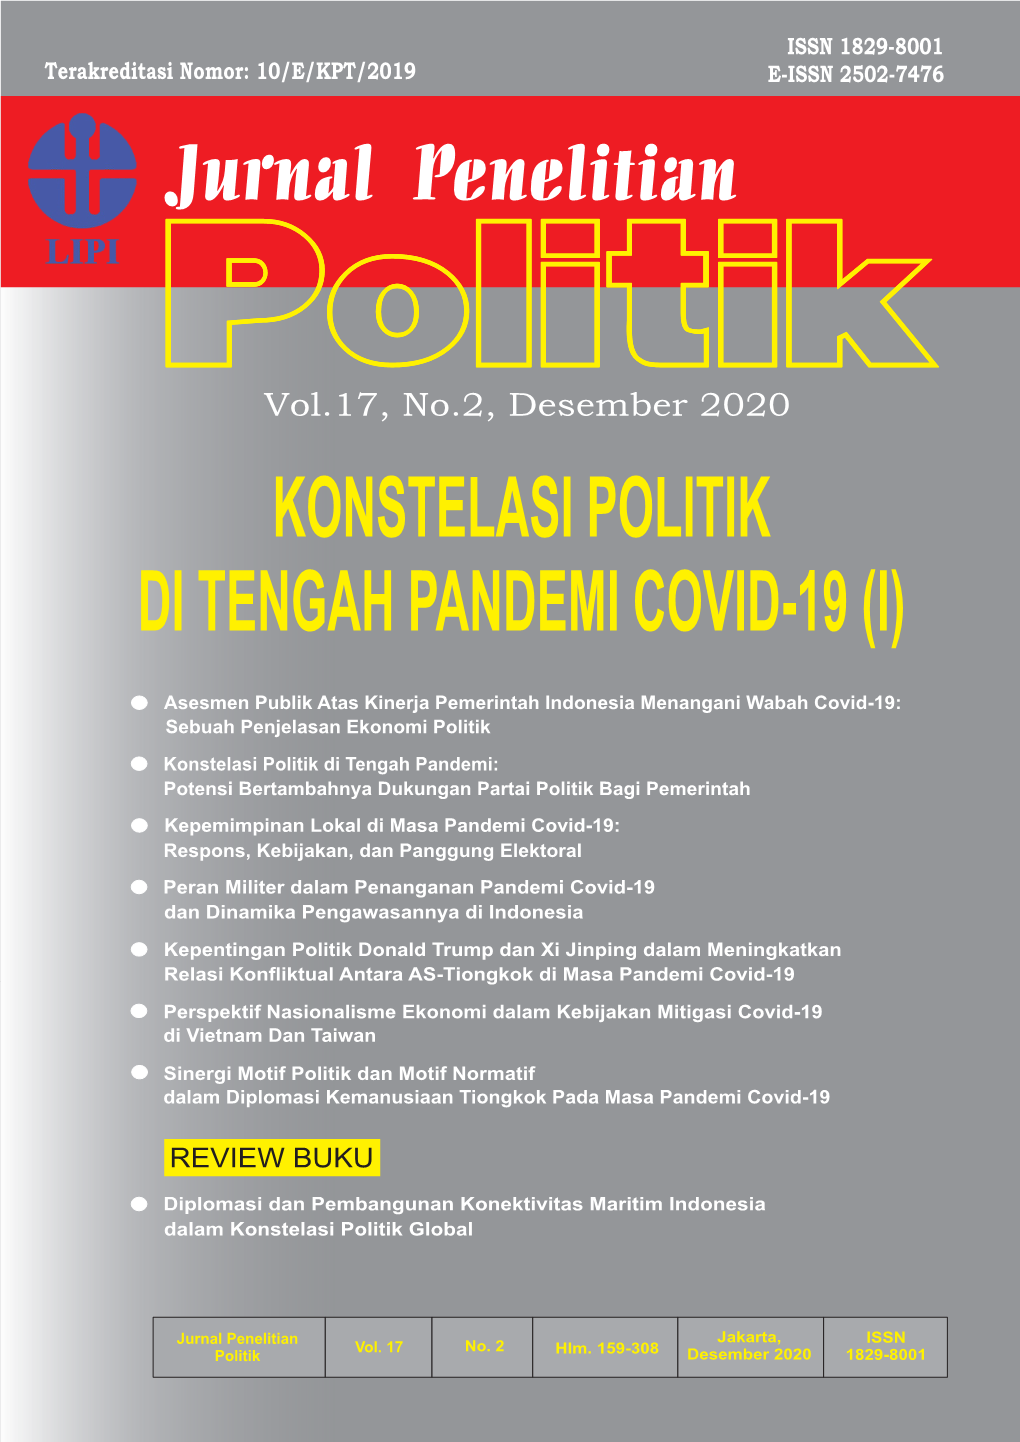 Konstelasi Politik Di Tengah Pandemi Covid-19 (I)